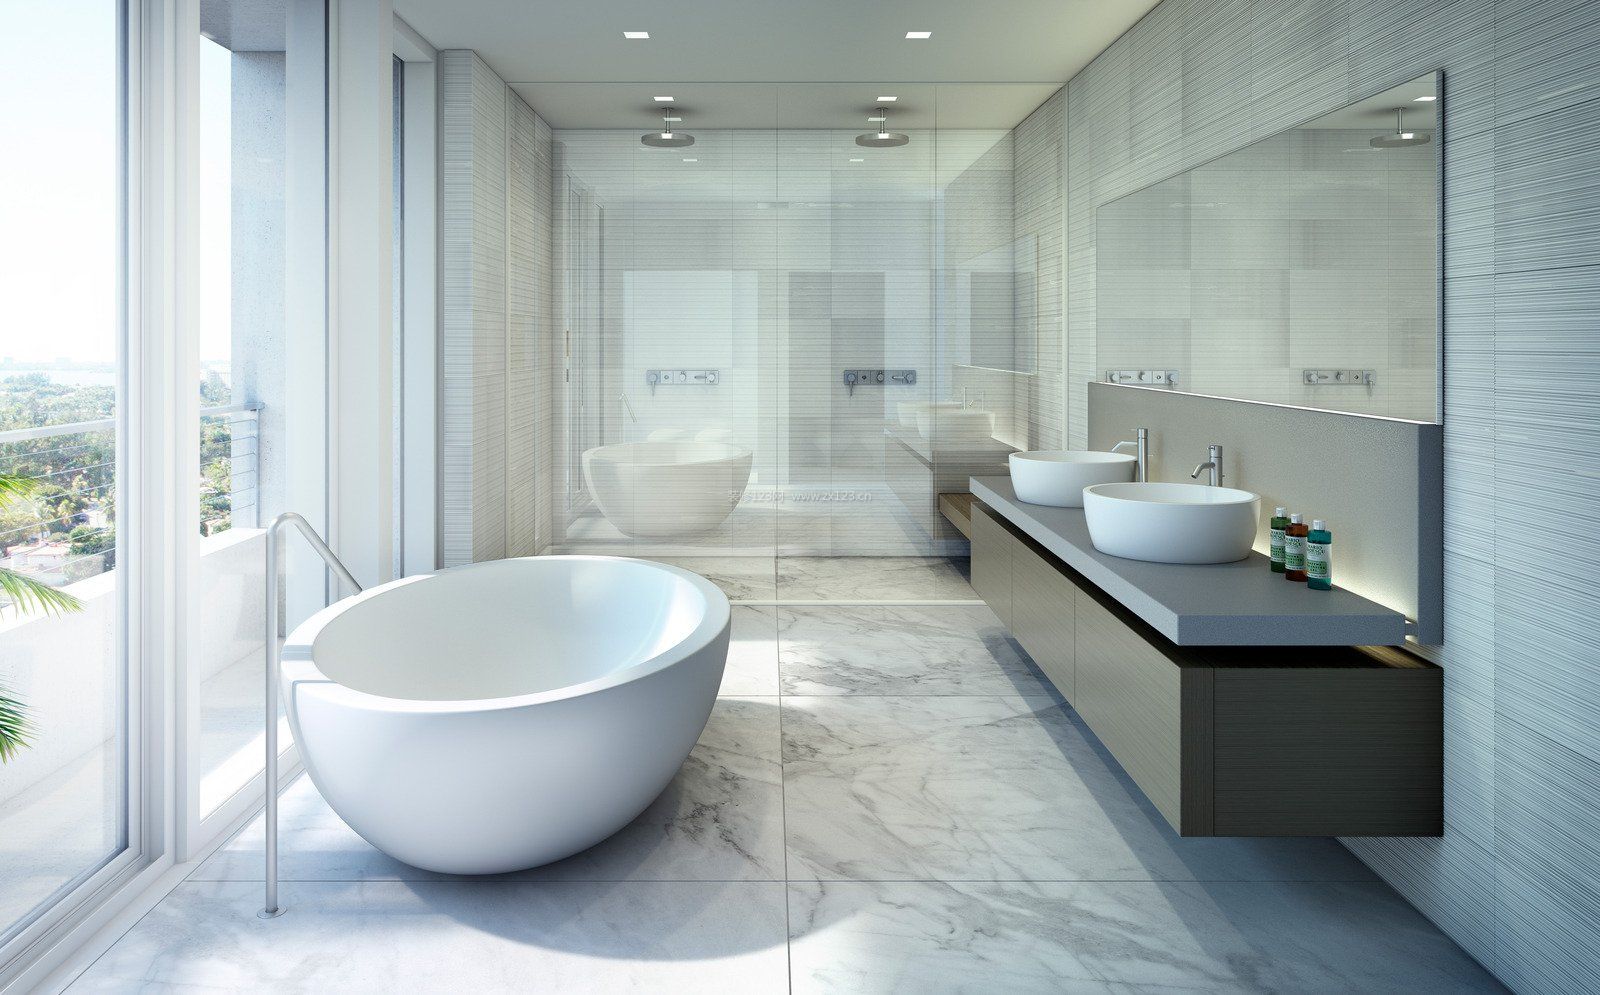 浴室白色简约风格装修效果图